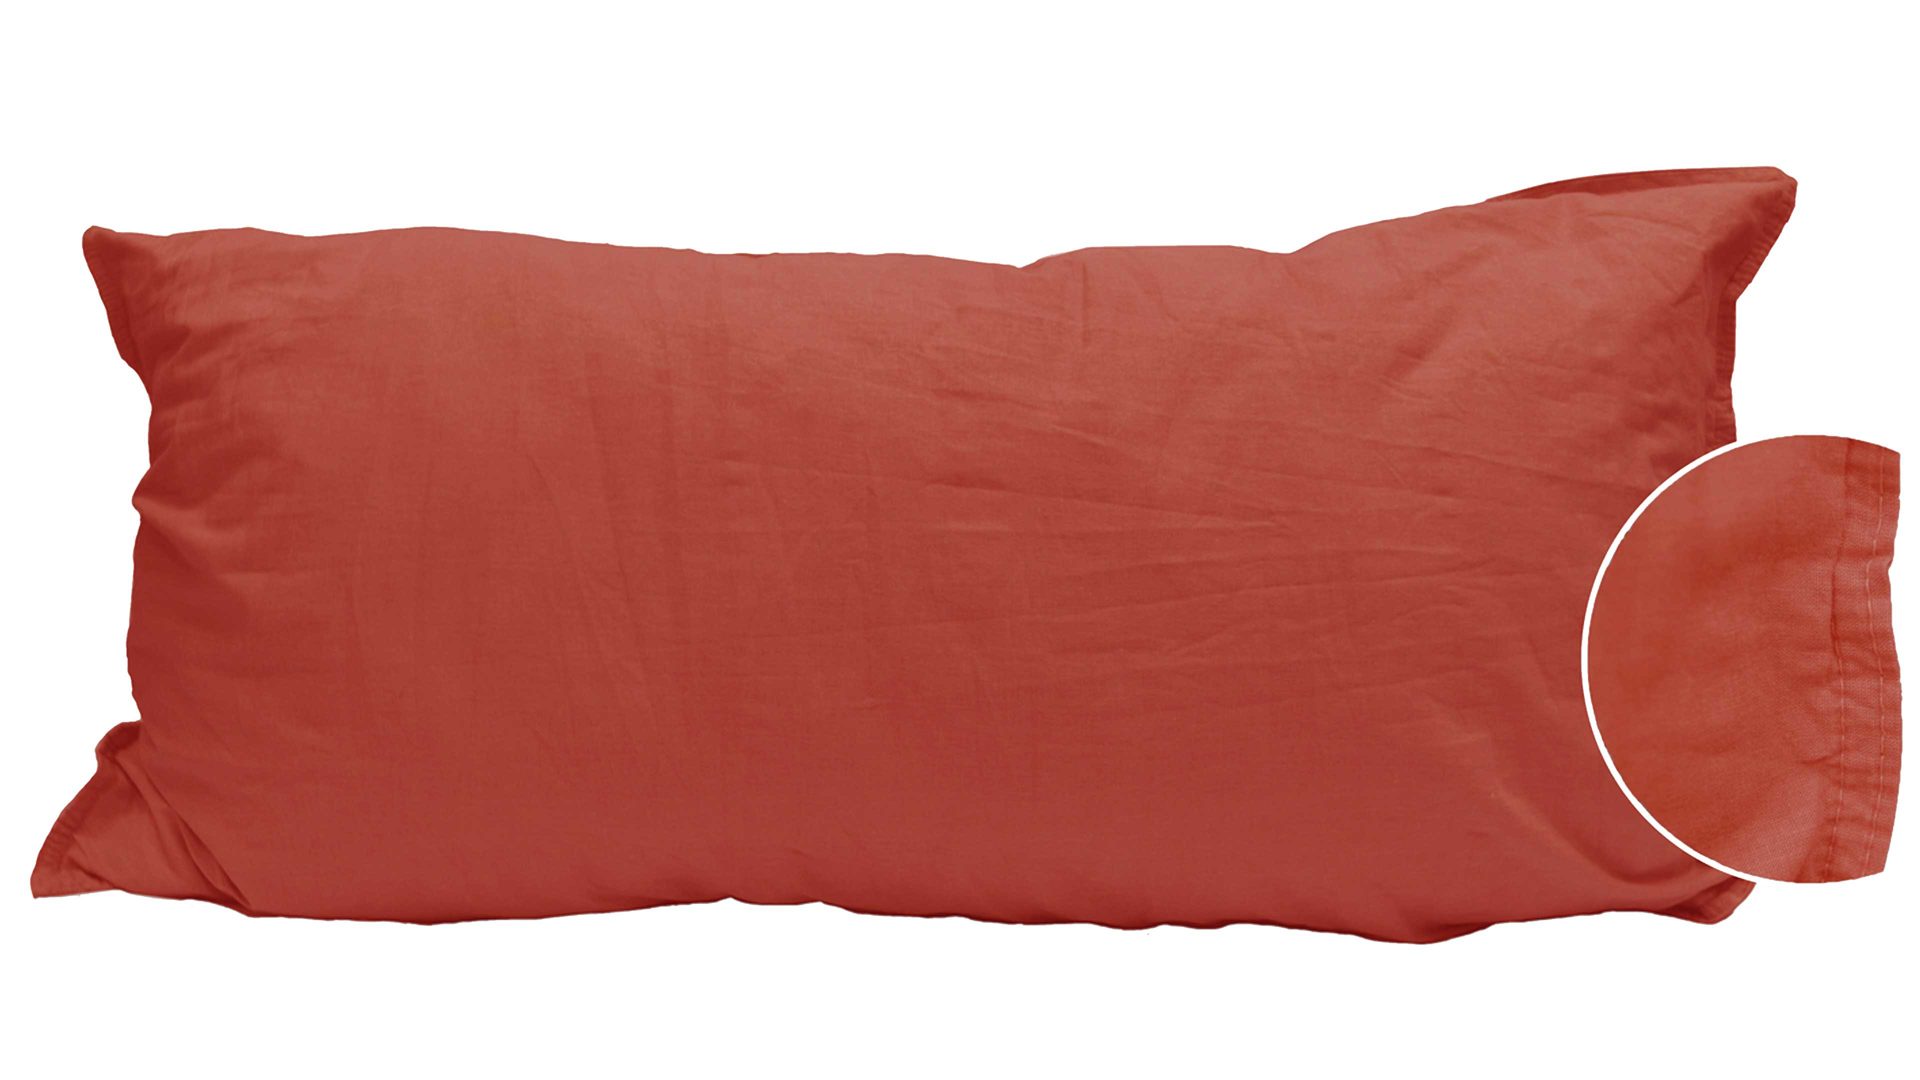 Kissenbezug /-hülle H.g. hahn haustextilien aus Stoff in Orange Kissenbezug Stone Washed sienafarbene Baumwolle – ca. 40 x 80 cm